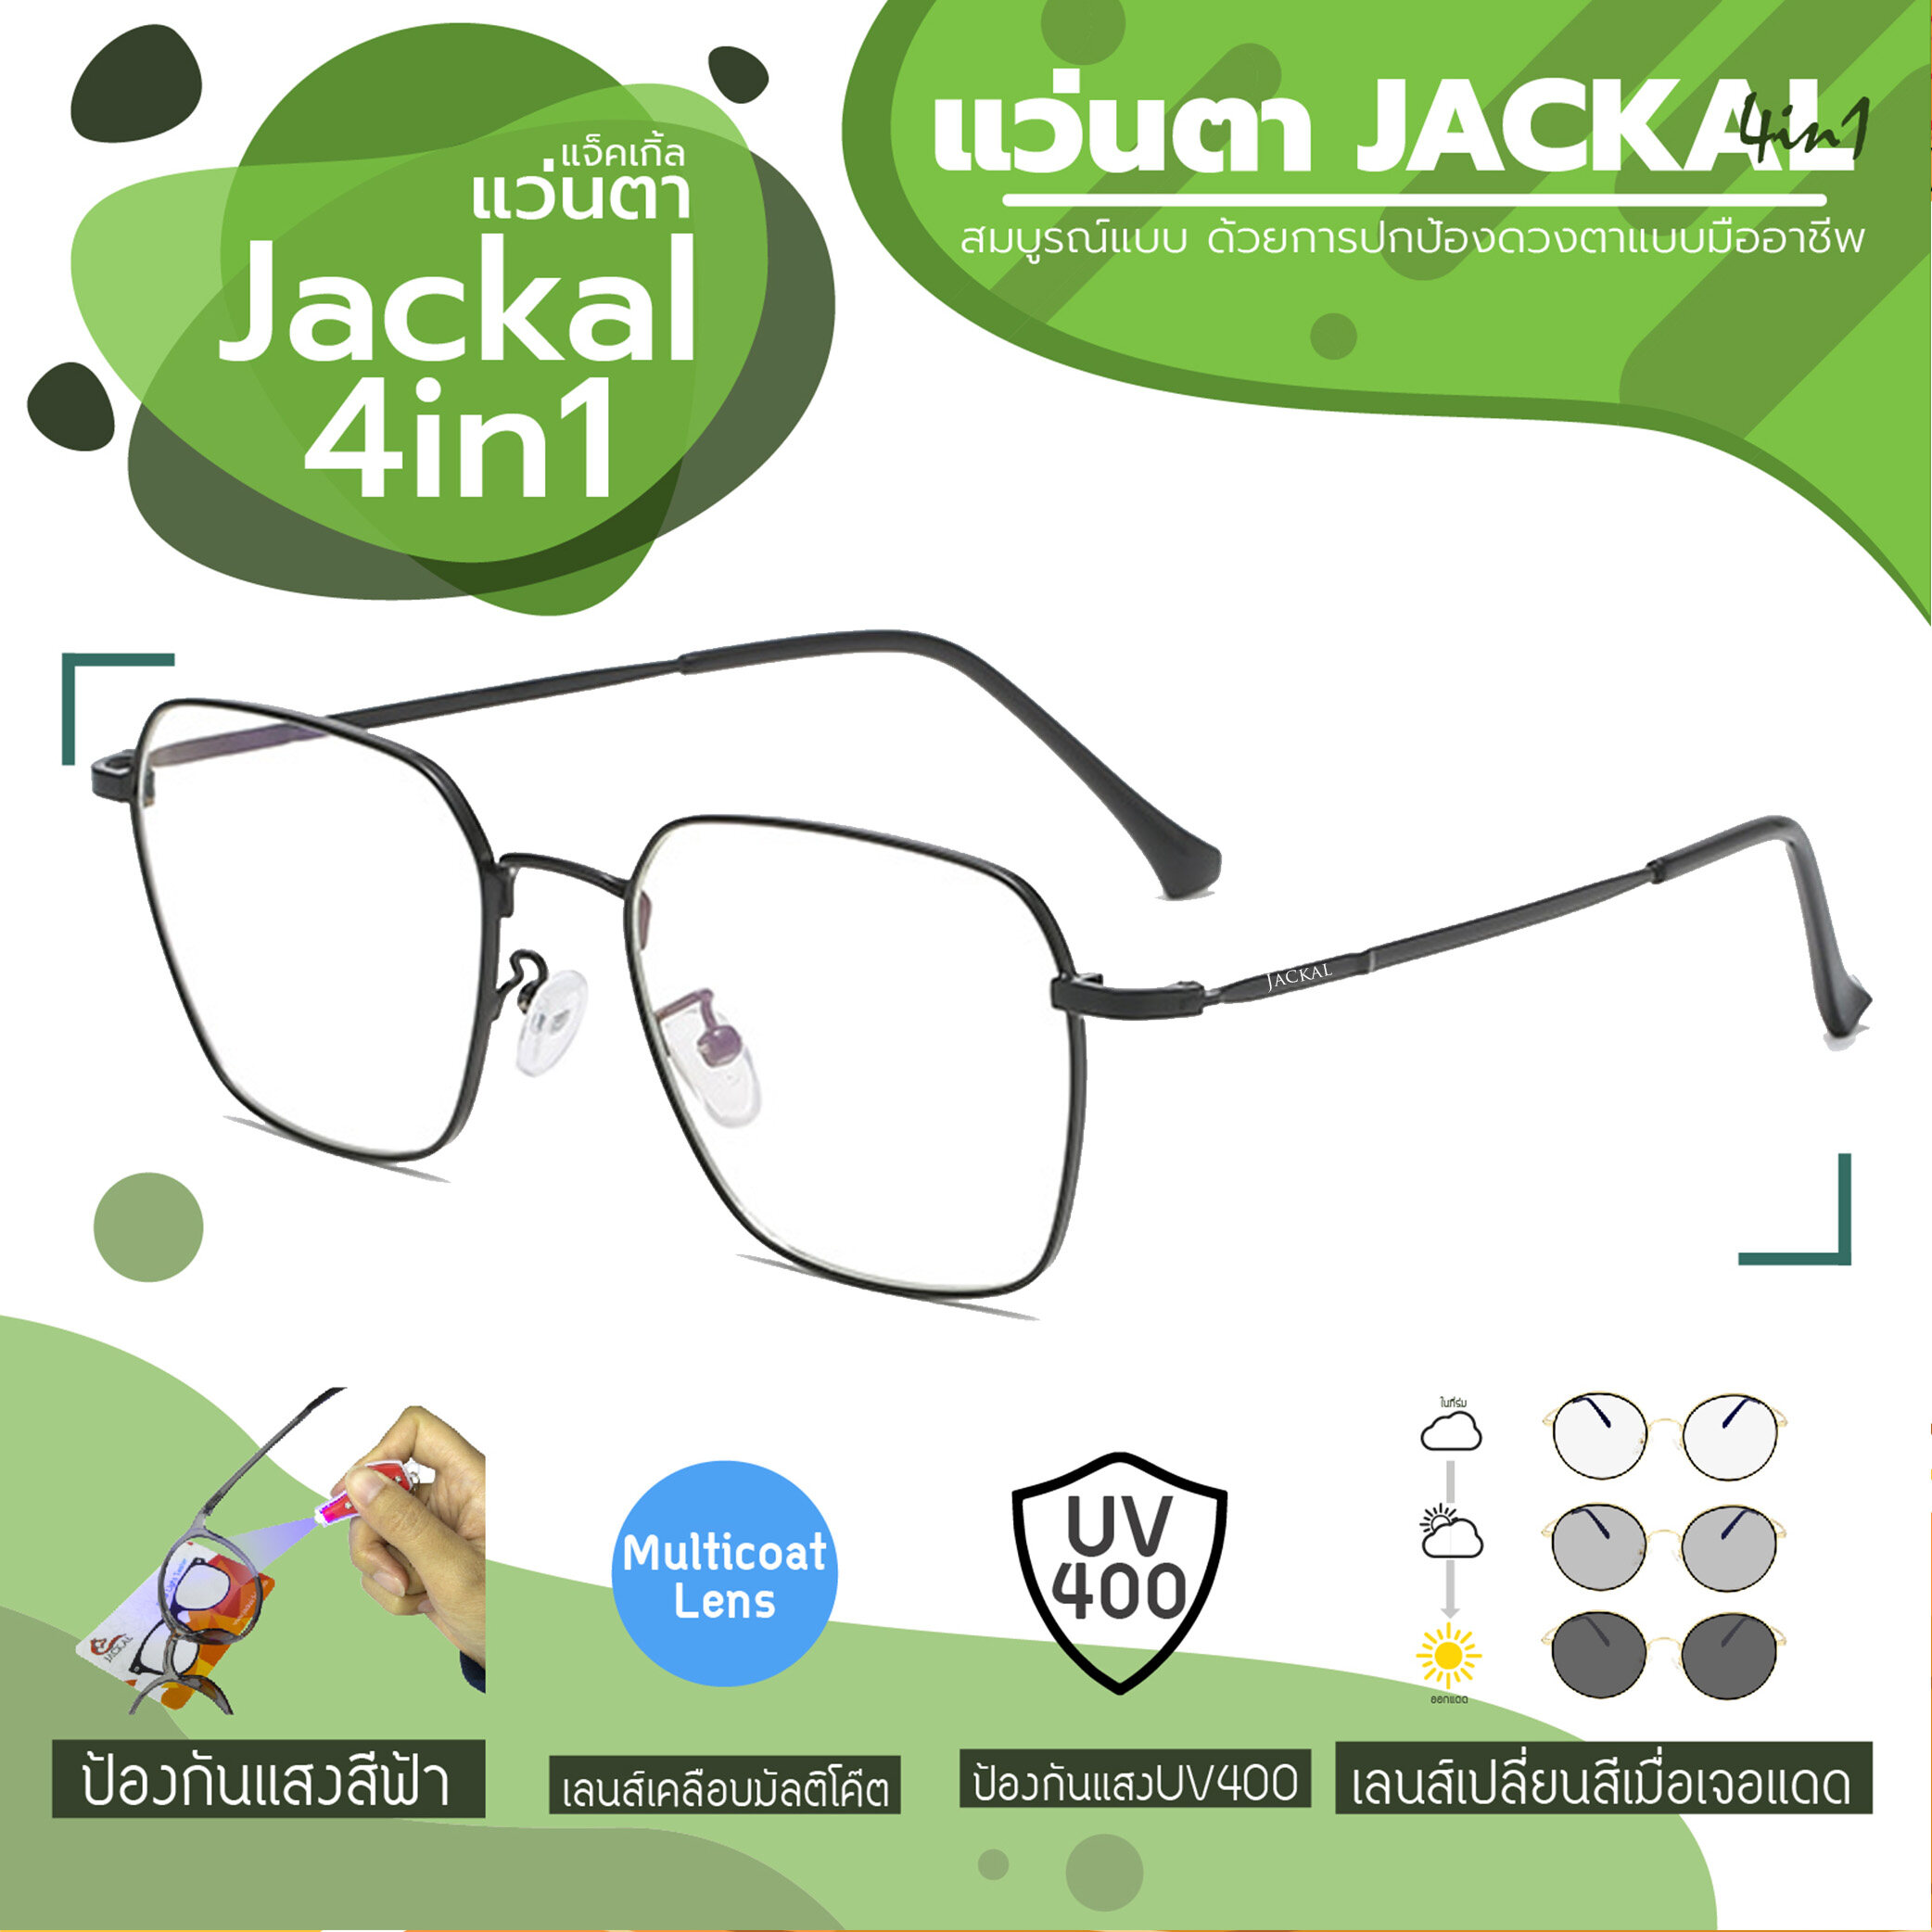 ใหม่!!JACKAL OPJ041(4in1) แว่นกรองแสงสีฟ้า เลนส์ออโต้ ออกแดดเปลี่ยนสี มัลติโค้ด สุดยอดเทคโนโลยีใหม่ PREMO Lens จากญี่ปุ่น  สีกรอบแว่น ดำ